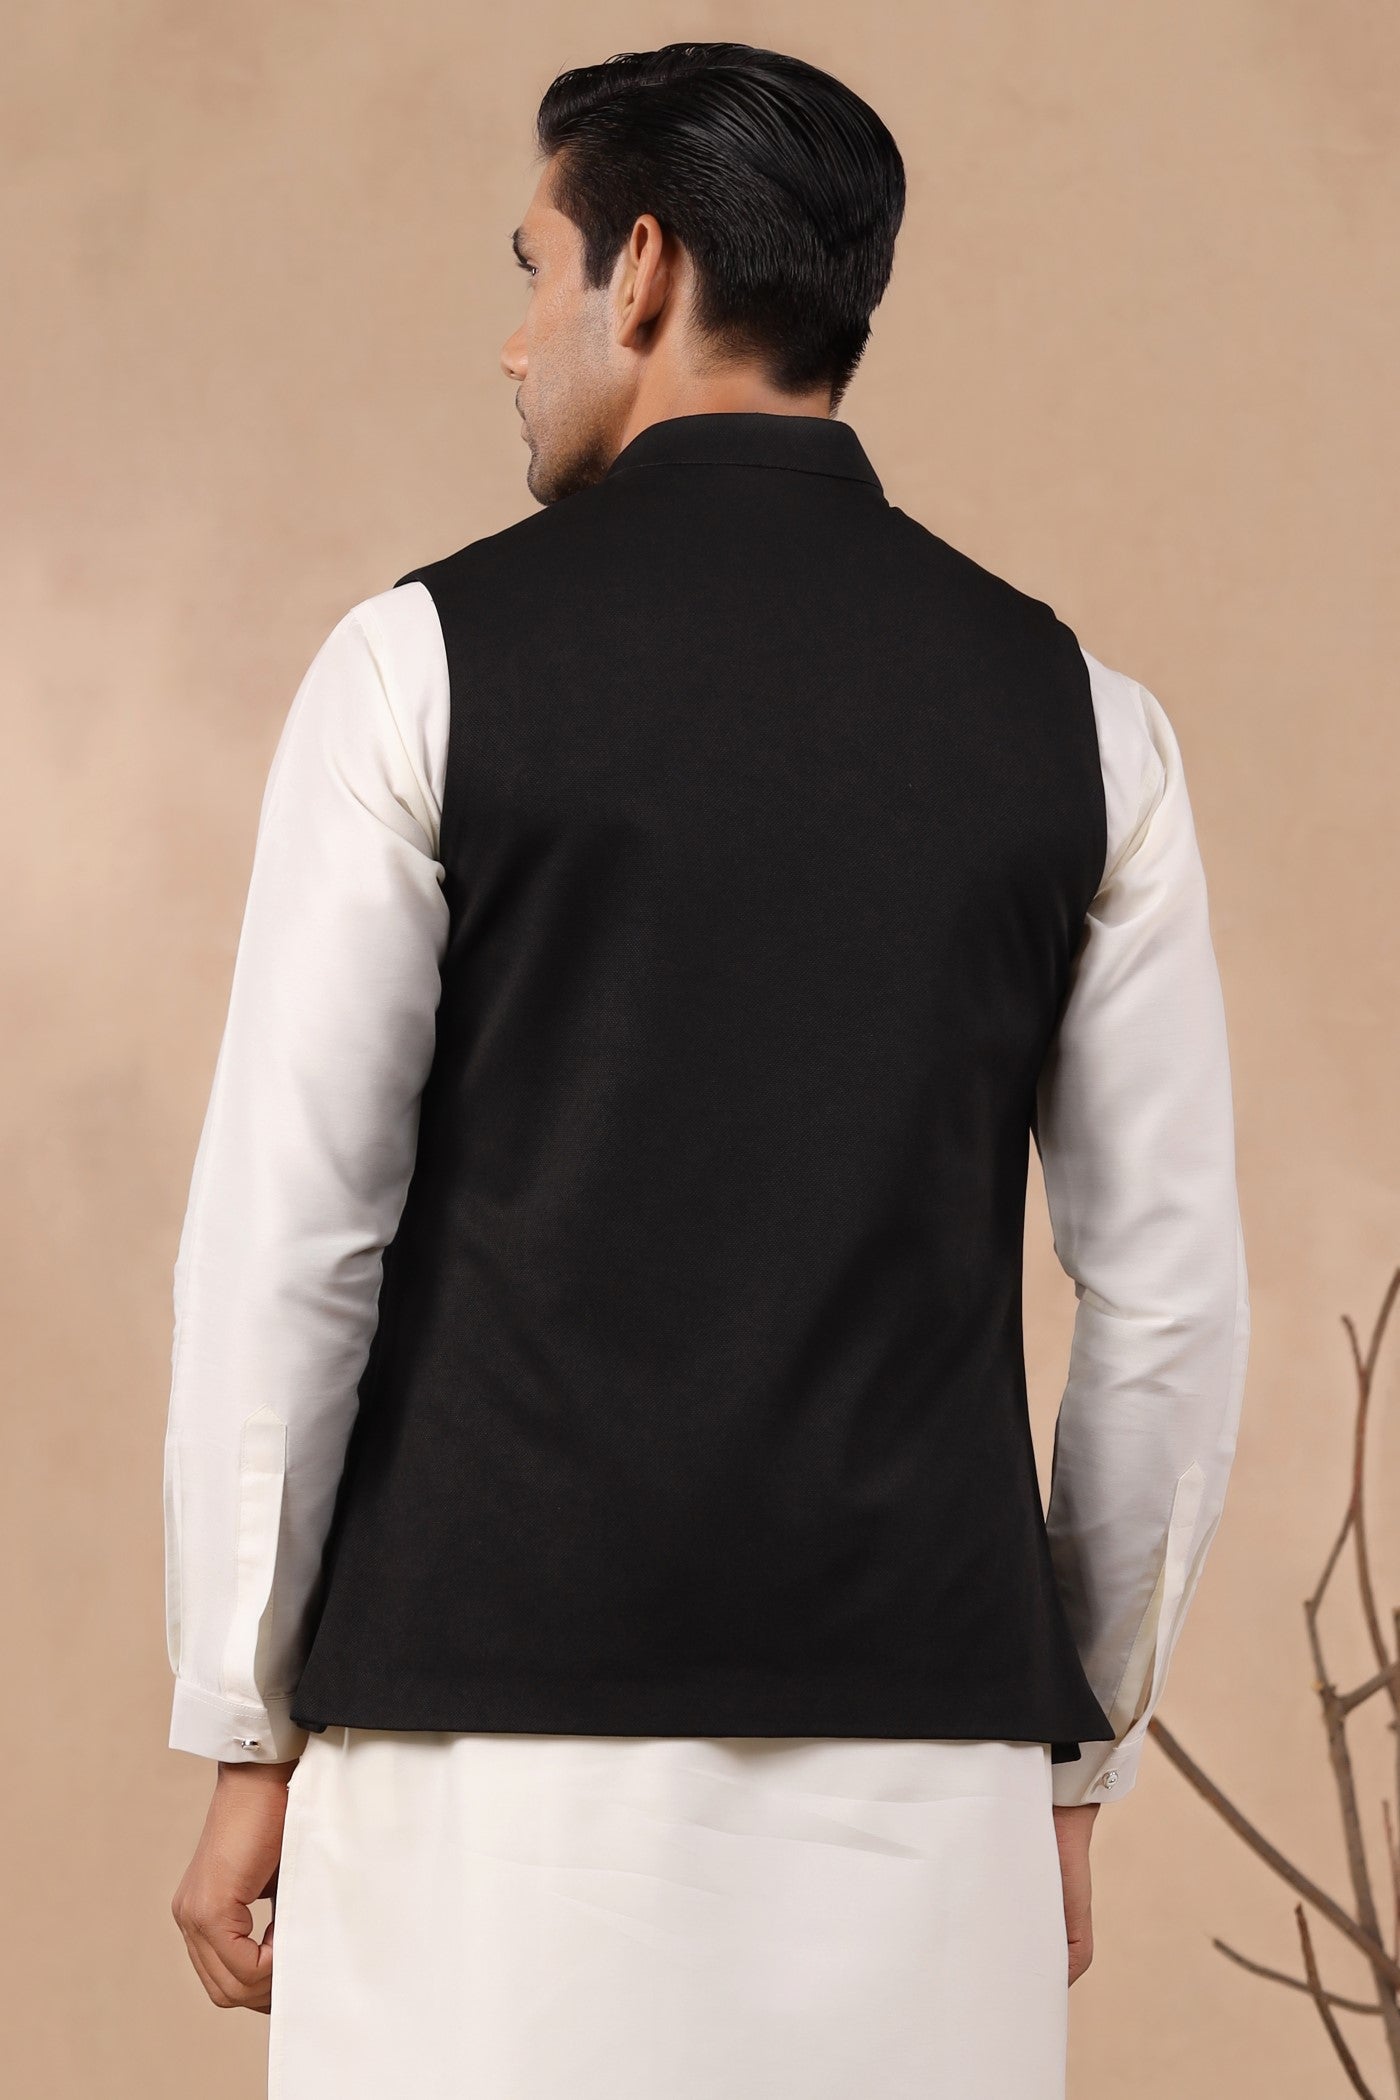 Black Color Plain Waist Coat For Men